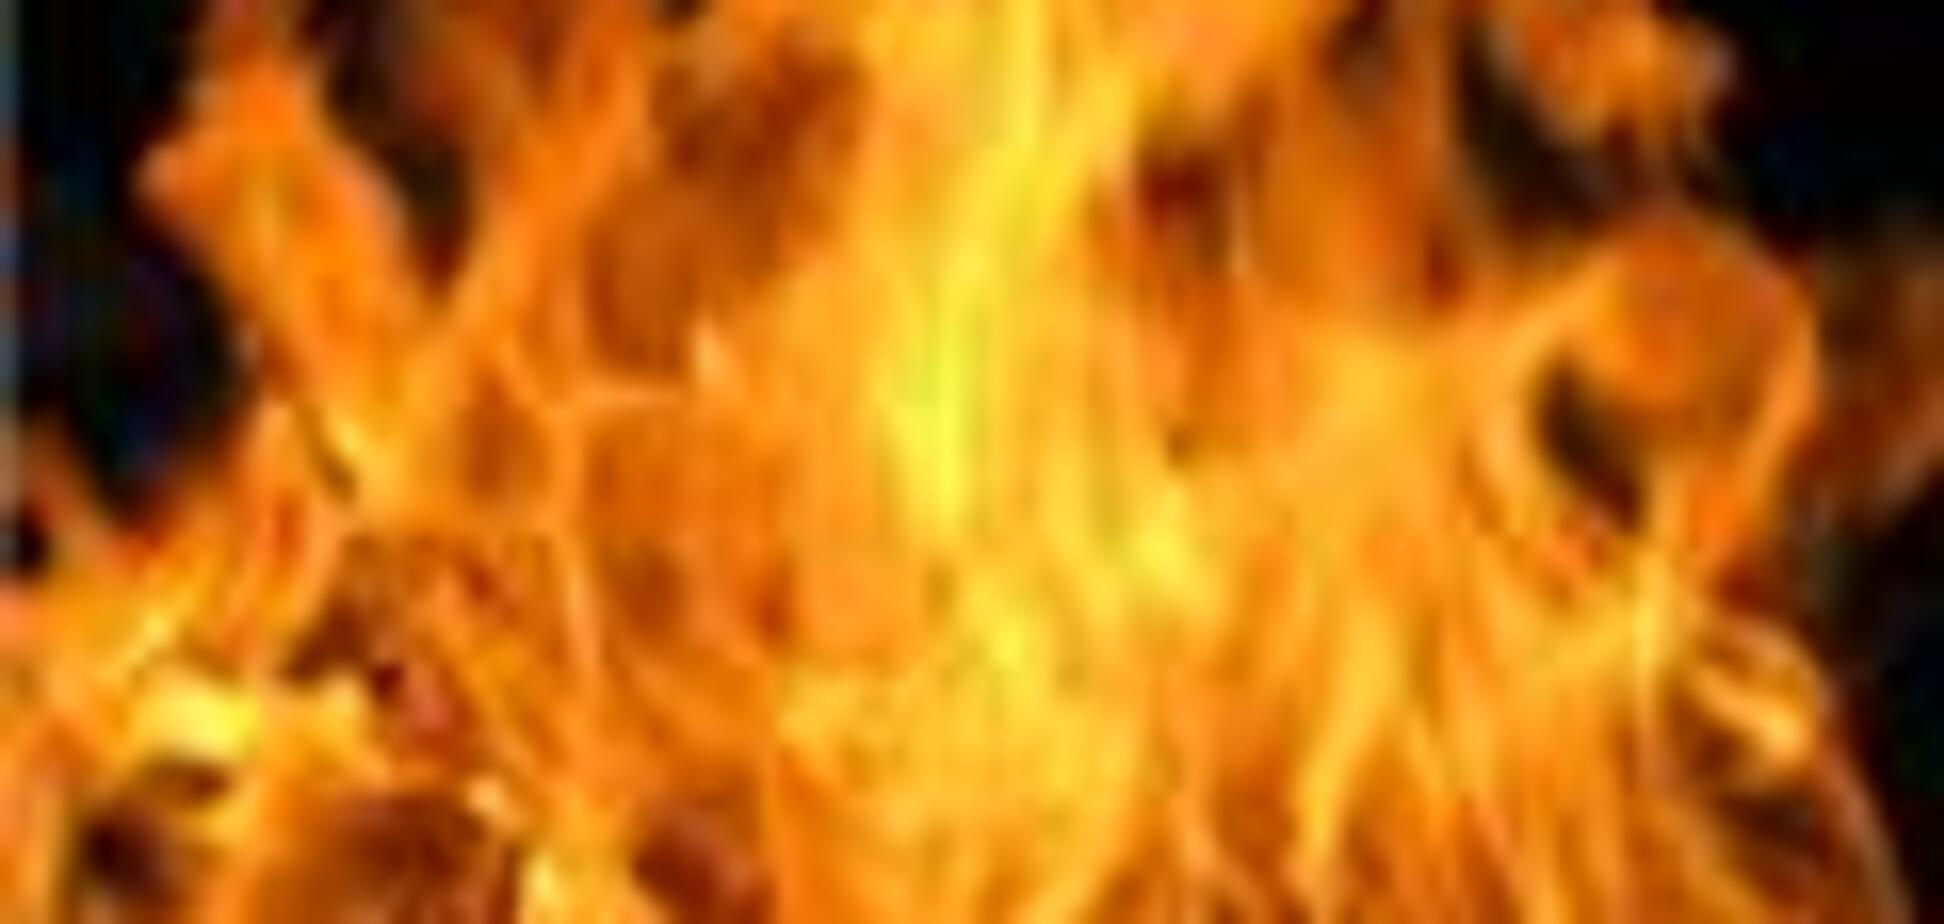 У Ростові-на-Дону згорів будинок, одна людина загинула